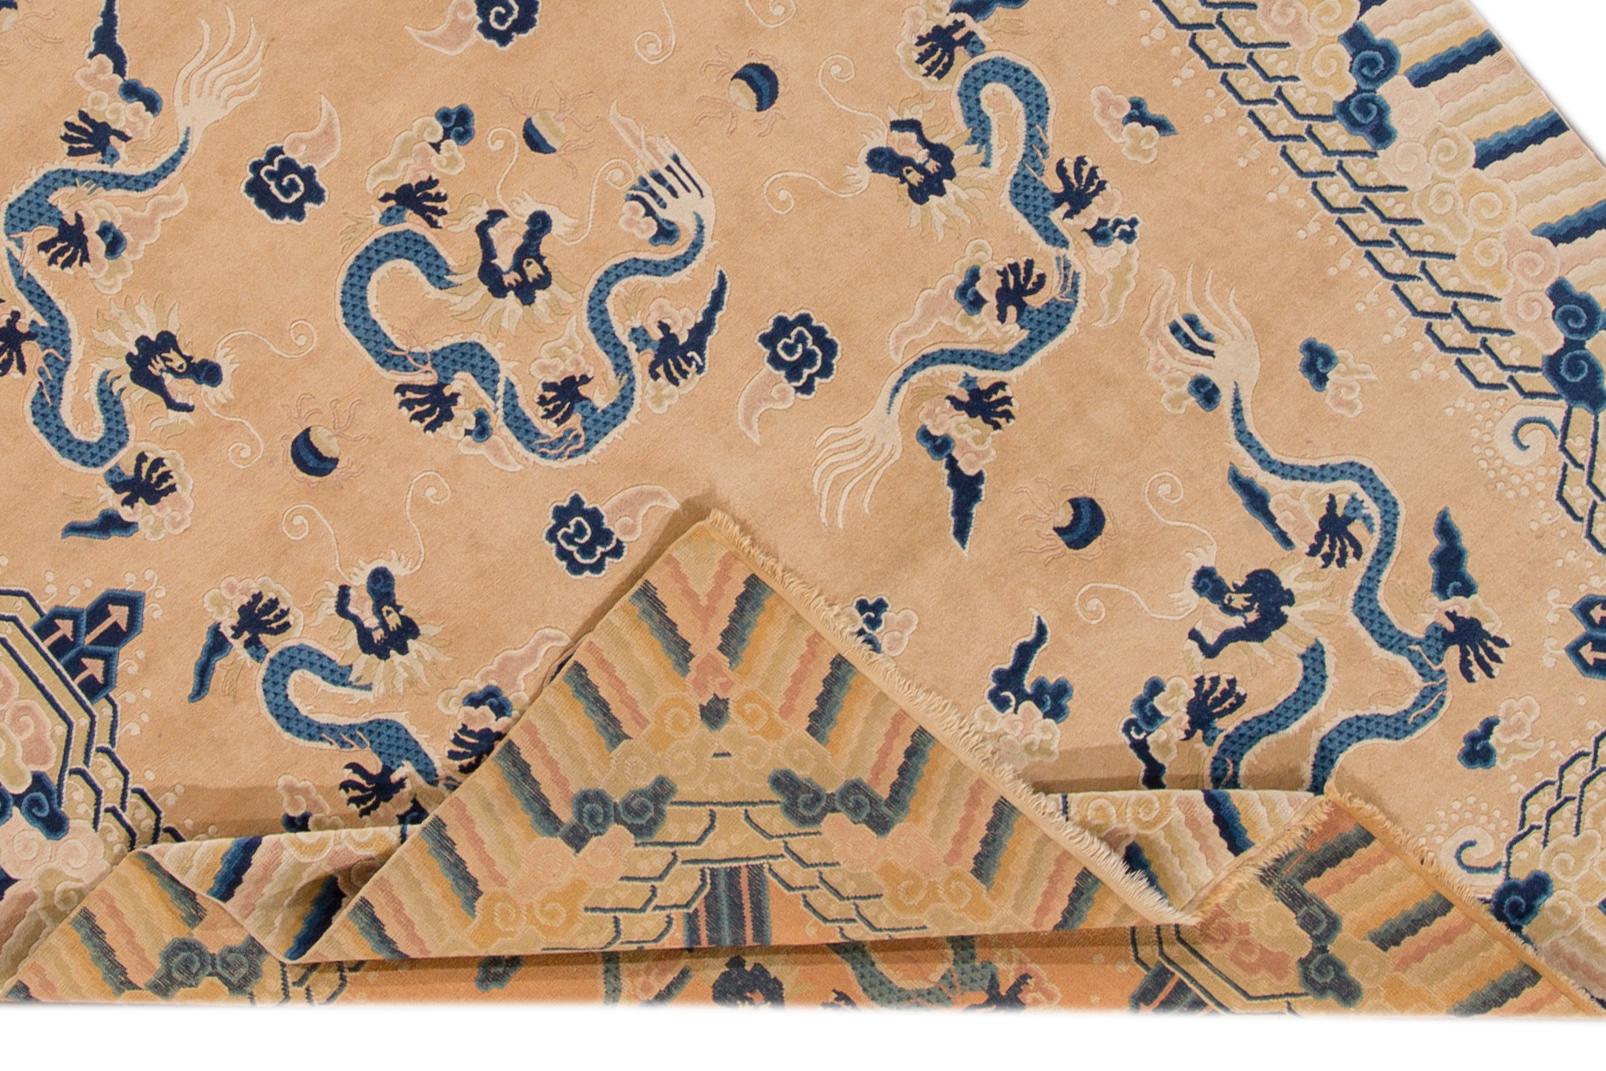 Eine schöne antike Drachen Peking chinesischen handgeknüpften Wollteppich mit einem Pfirsich Feld und blauen Akzenten all-over chinesischen Drachen-Design.

Dieser Teppich misst: 6'7